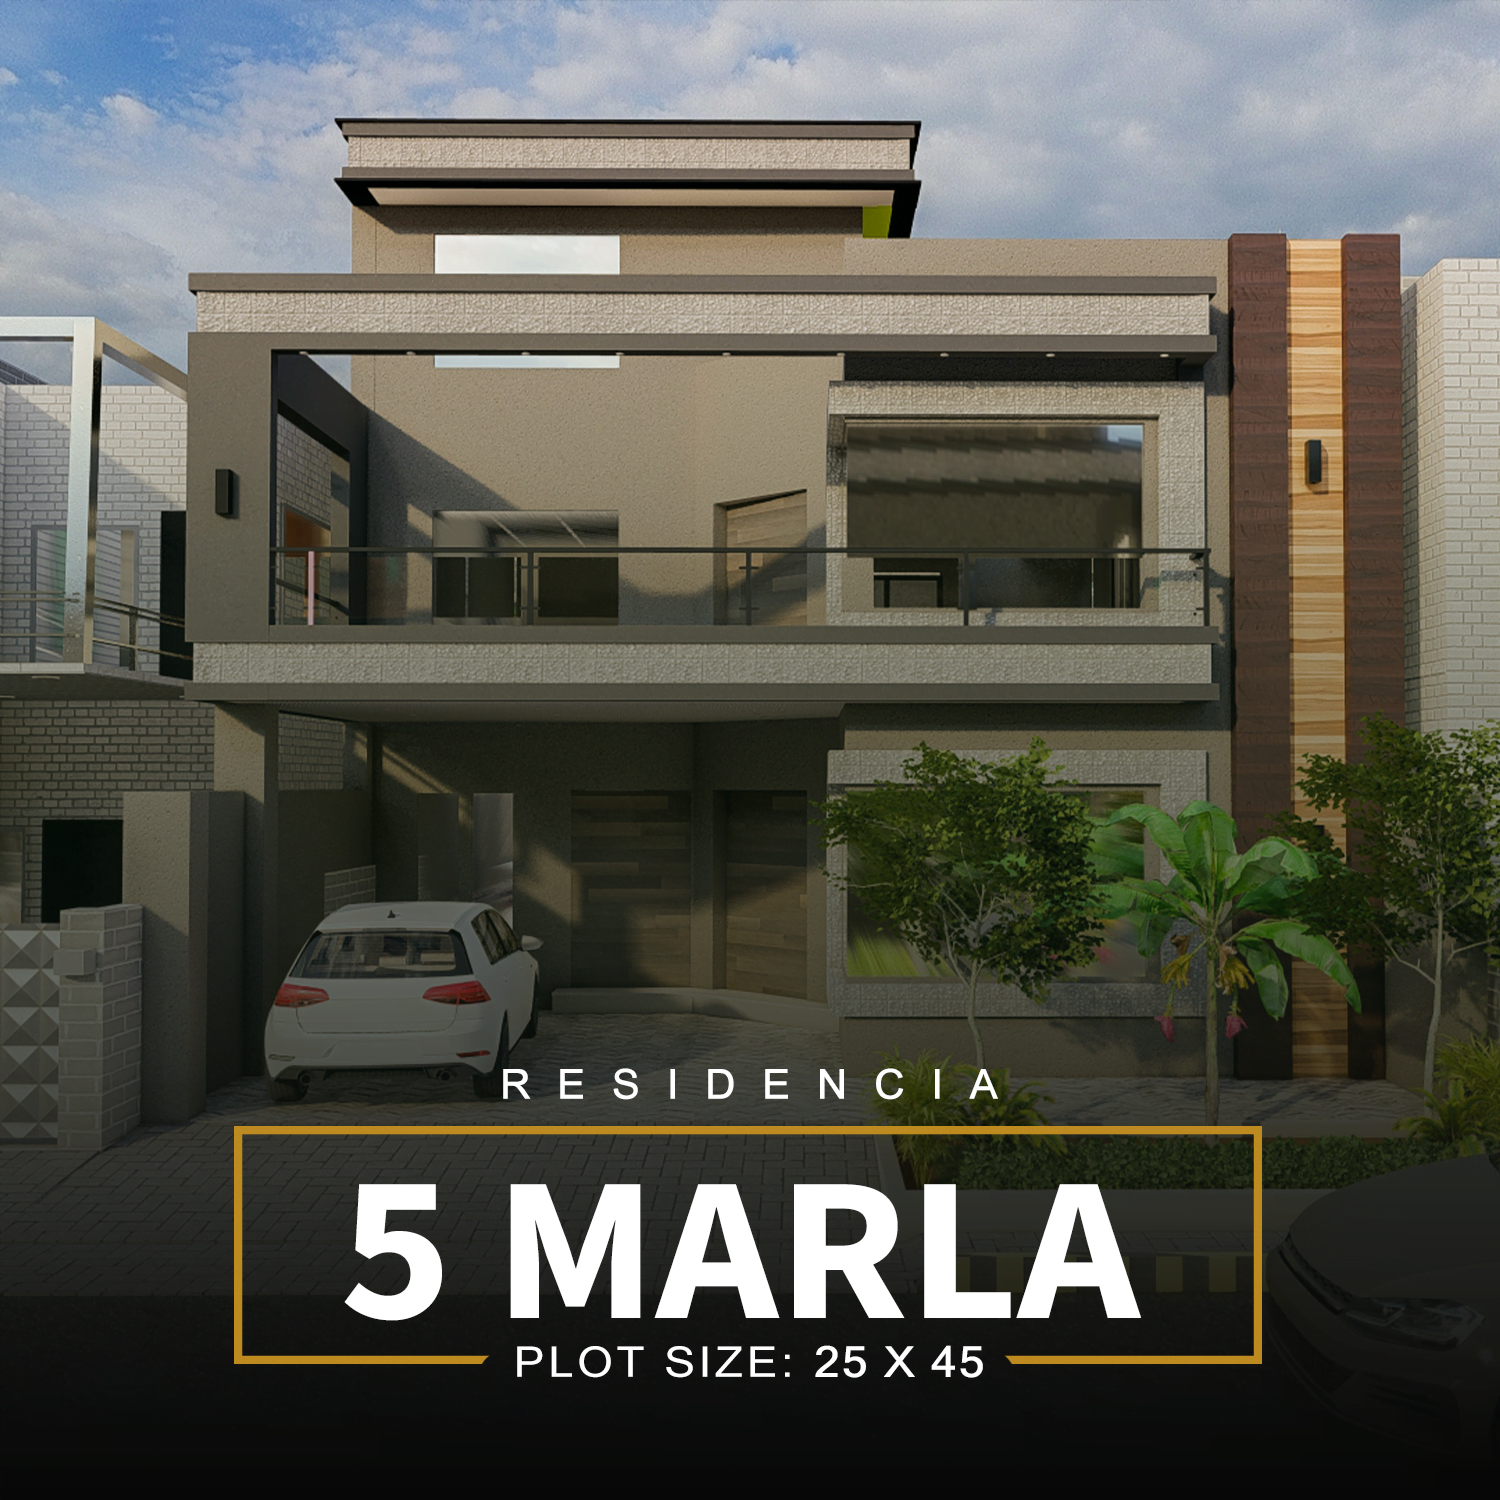 5 Marla residential plots